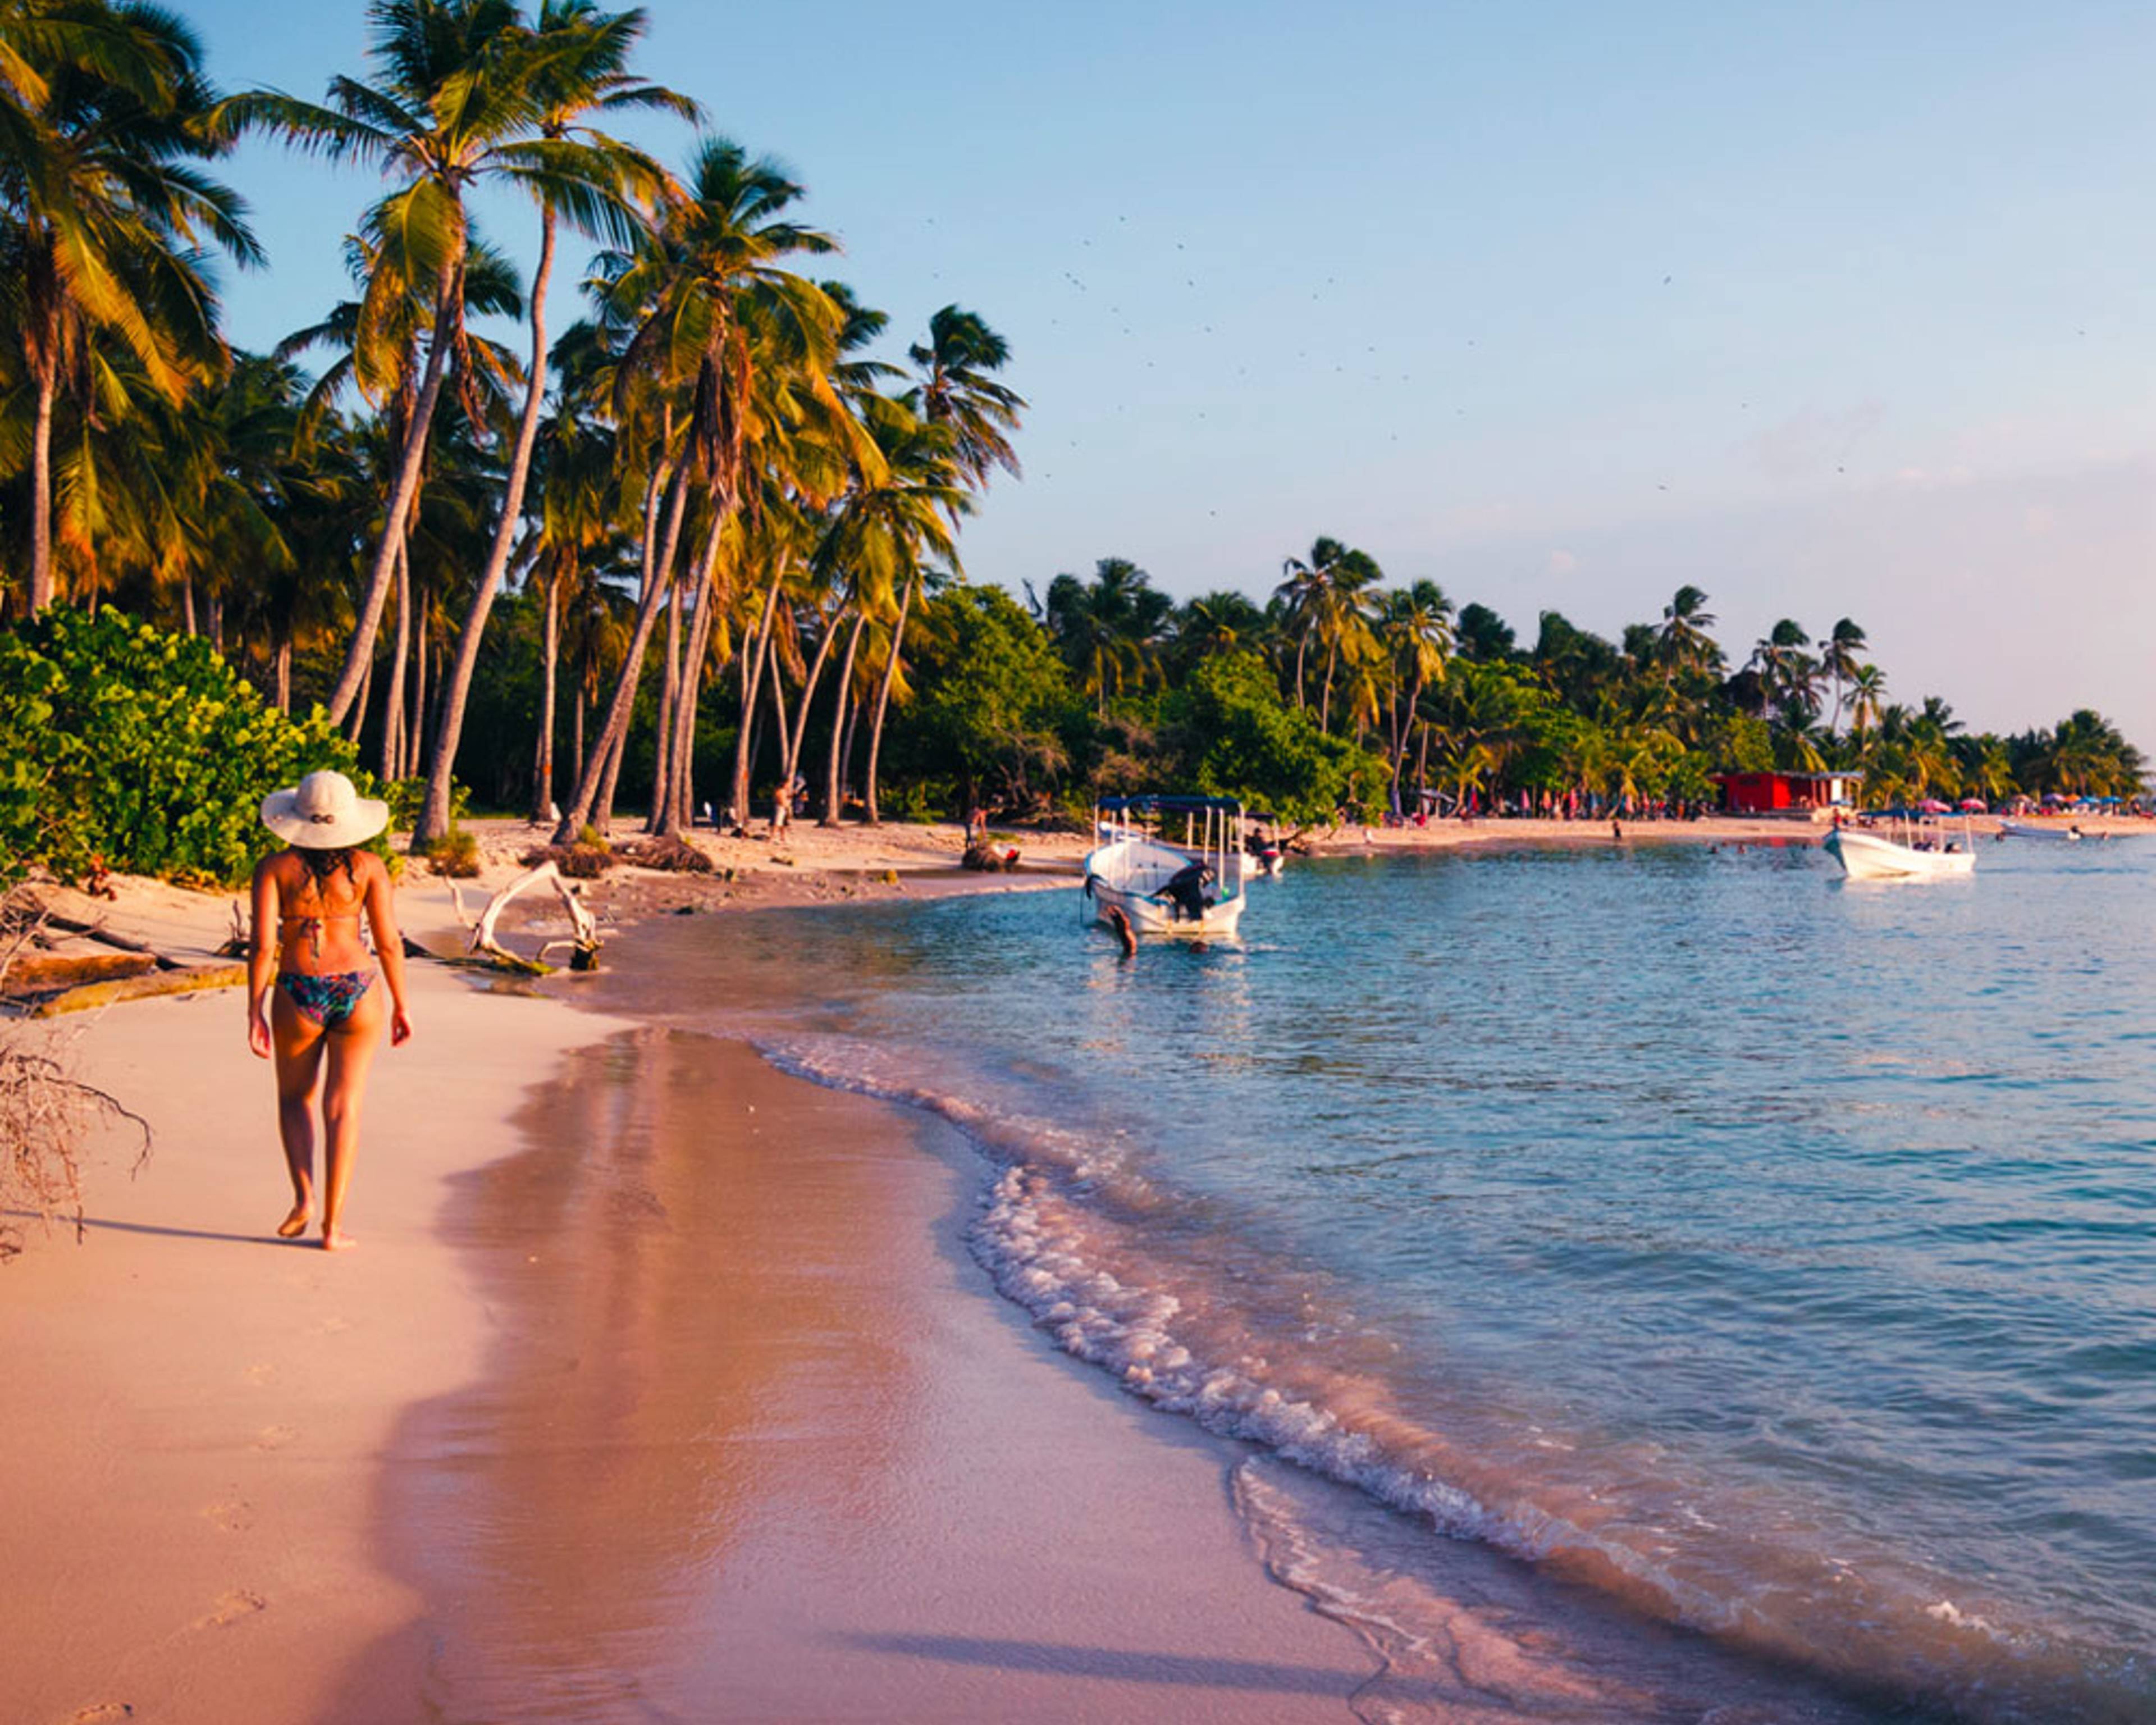 Découvrez les plus belles plages lors de votre voyage au Venezuela 100% sur mesure